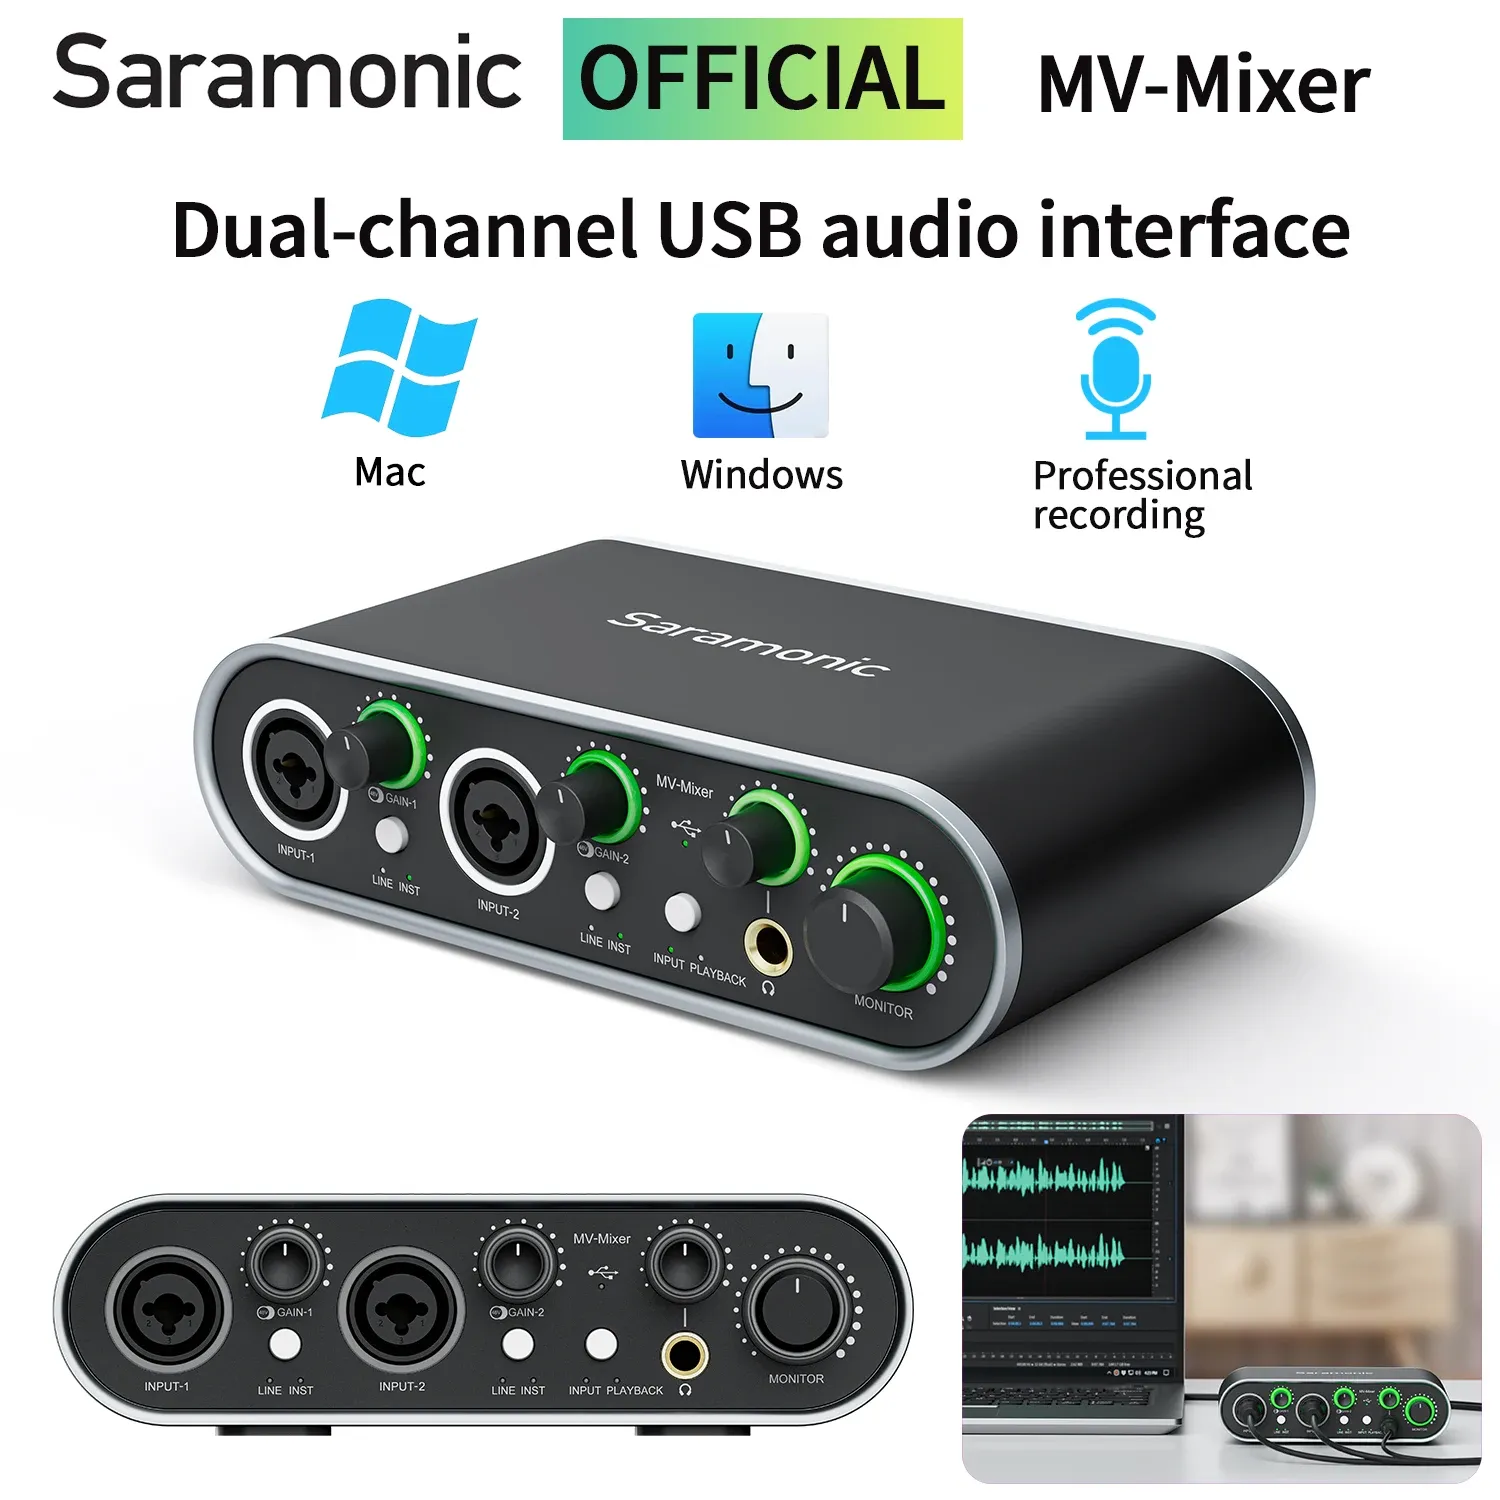 Accessoires Saramonic Mvmixer DualChannel USB Microphone Audio Interface pour les chanteurs guitaristes musiciens Podcasters producteurs en streaming